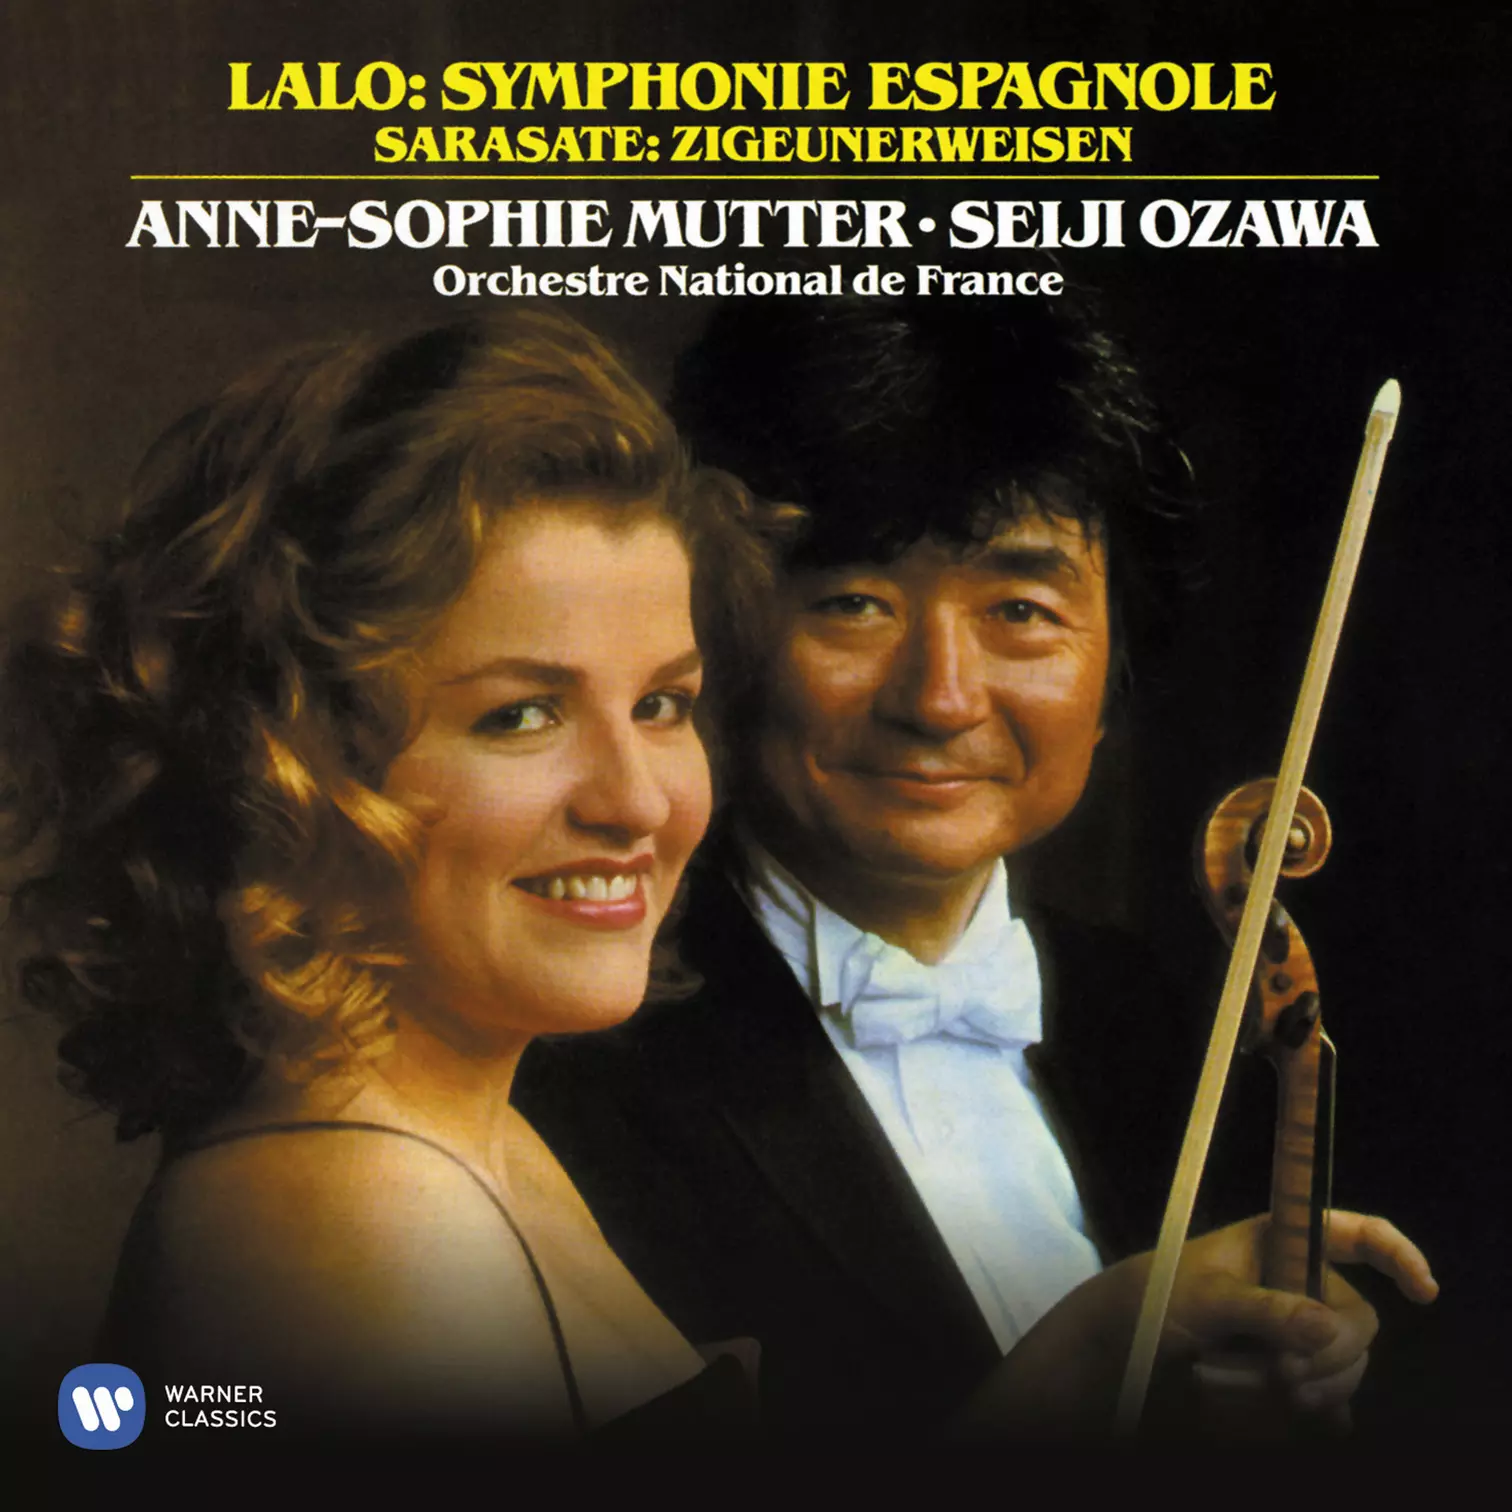 Lalo: Symphonie espagnole, Op. 21 - Sarasate: Zigeunerweisen, Op. 20